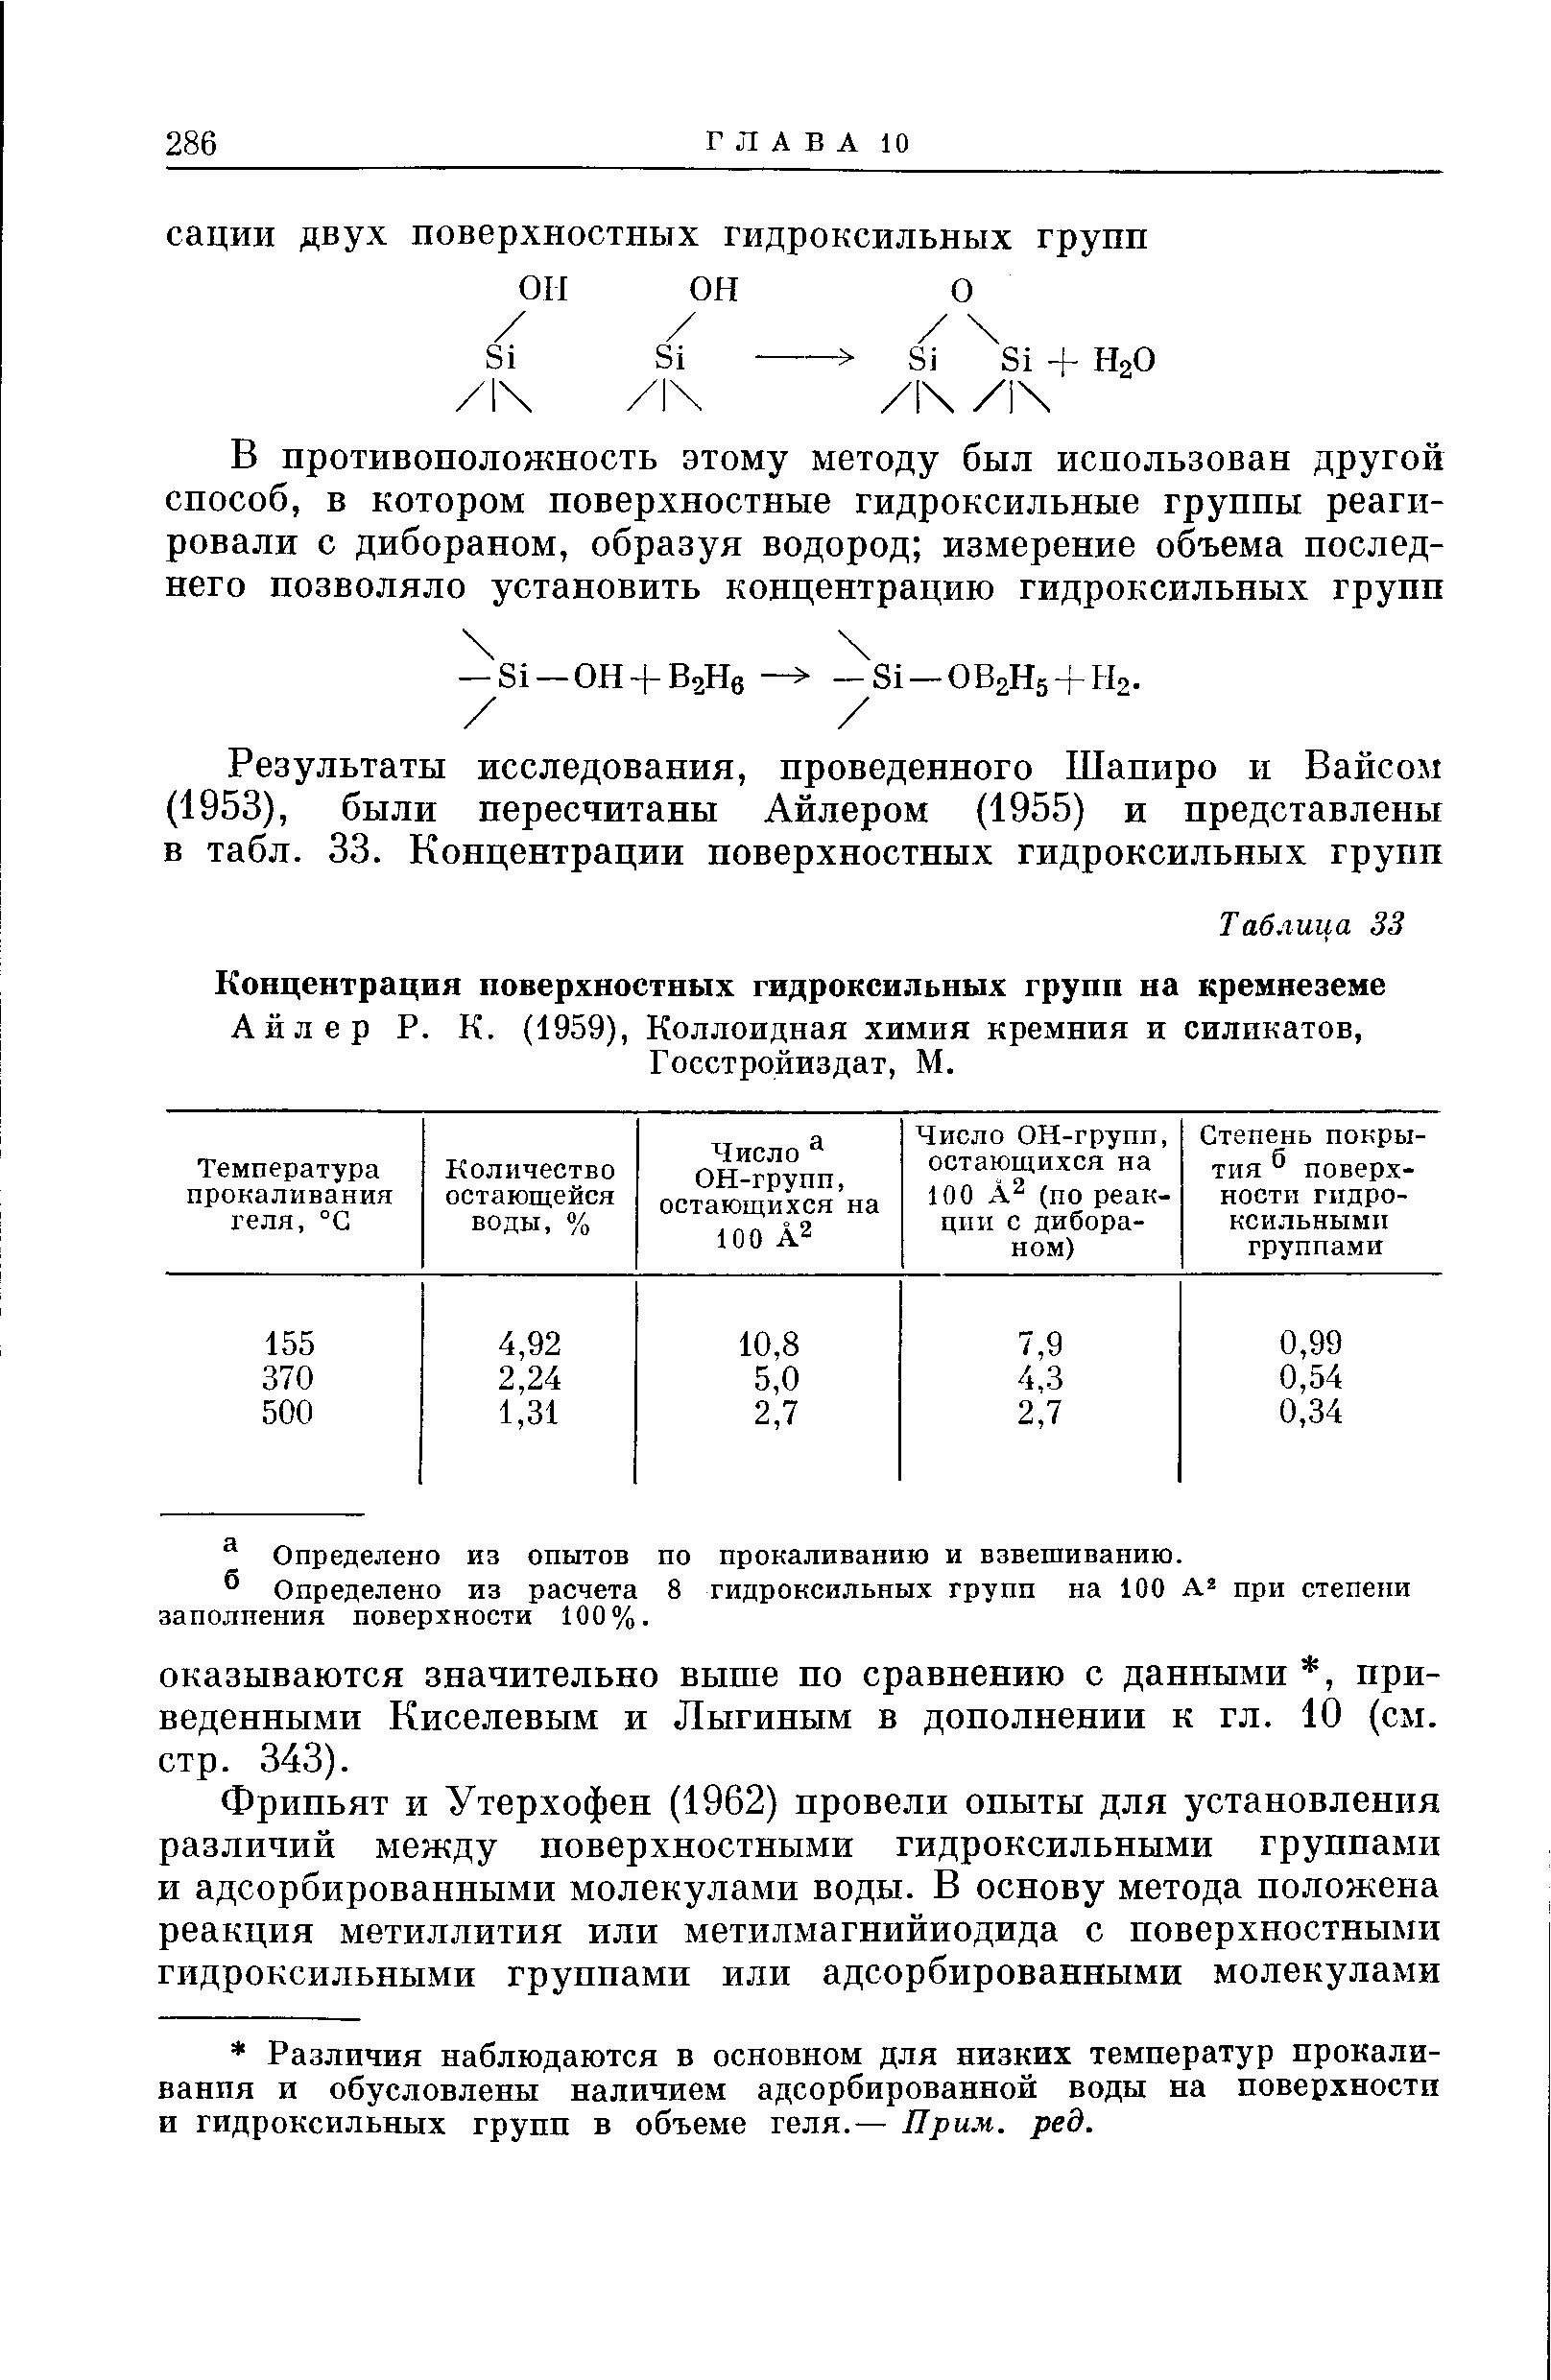 Айлер Р. К. (1959), Коллоидная химия кремния и силикатов, Госстройиздат, М.